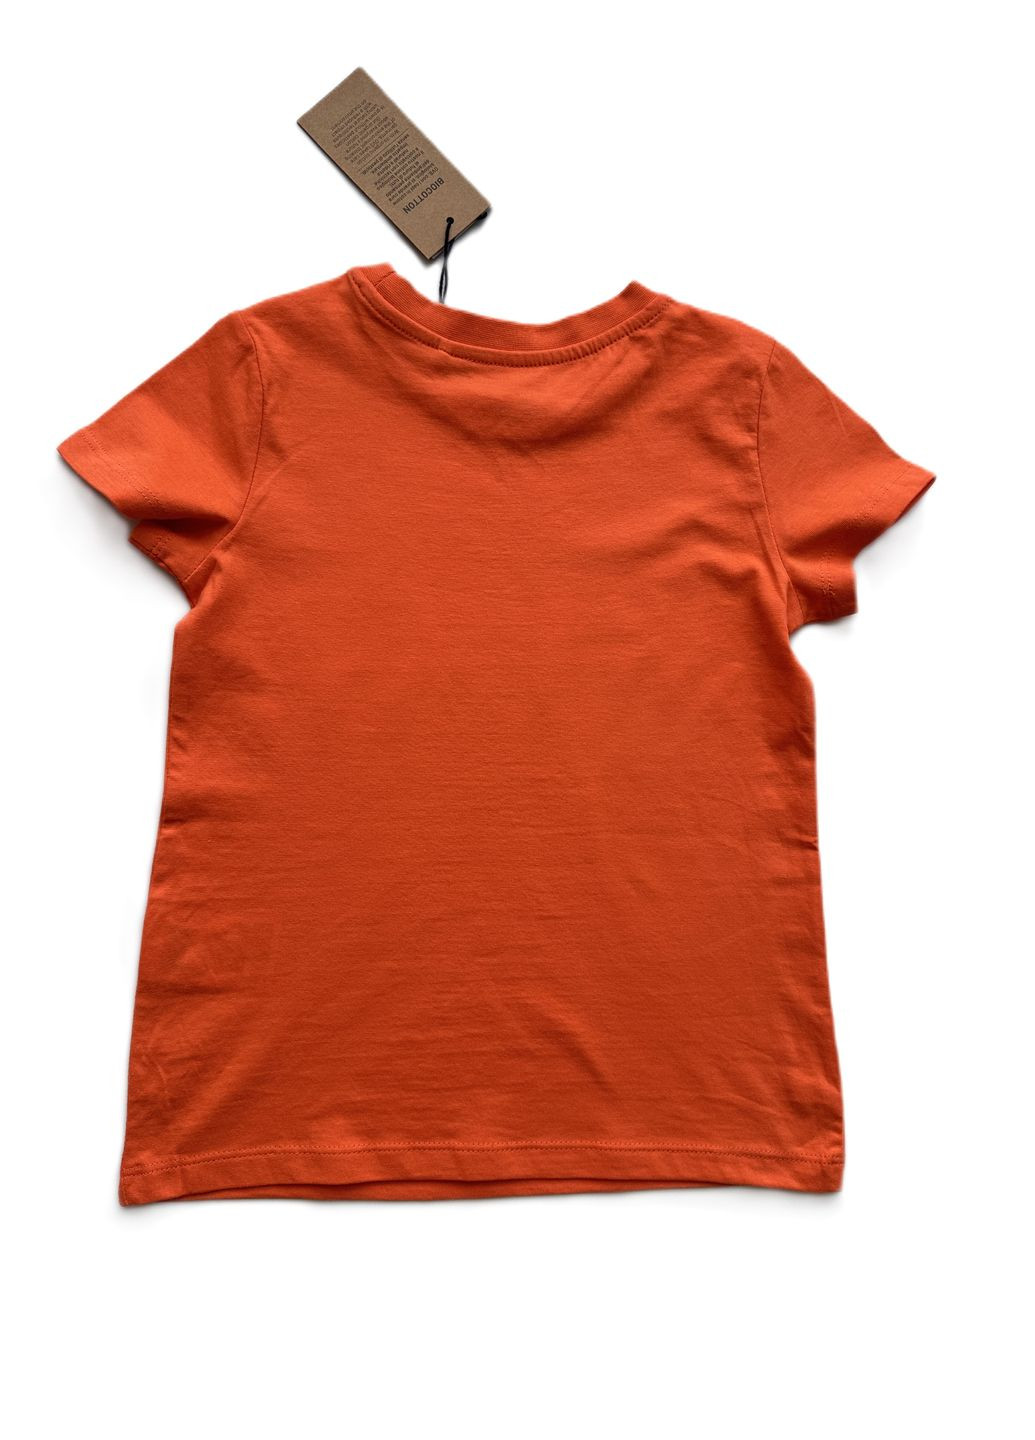 Помаранчева літня футболка для хлопця оранжева базова 2000-21 (116 см) OVS